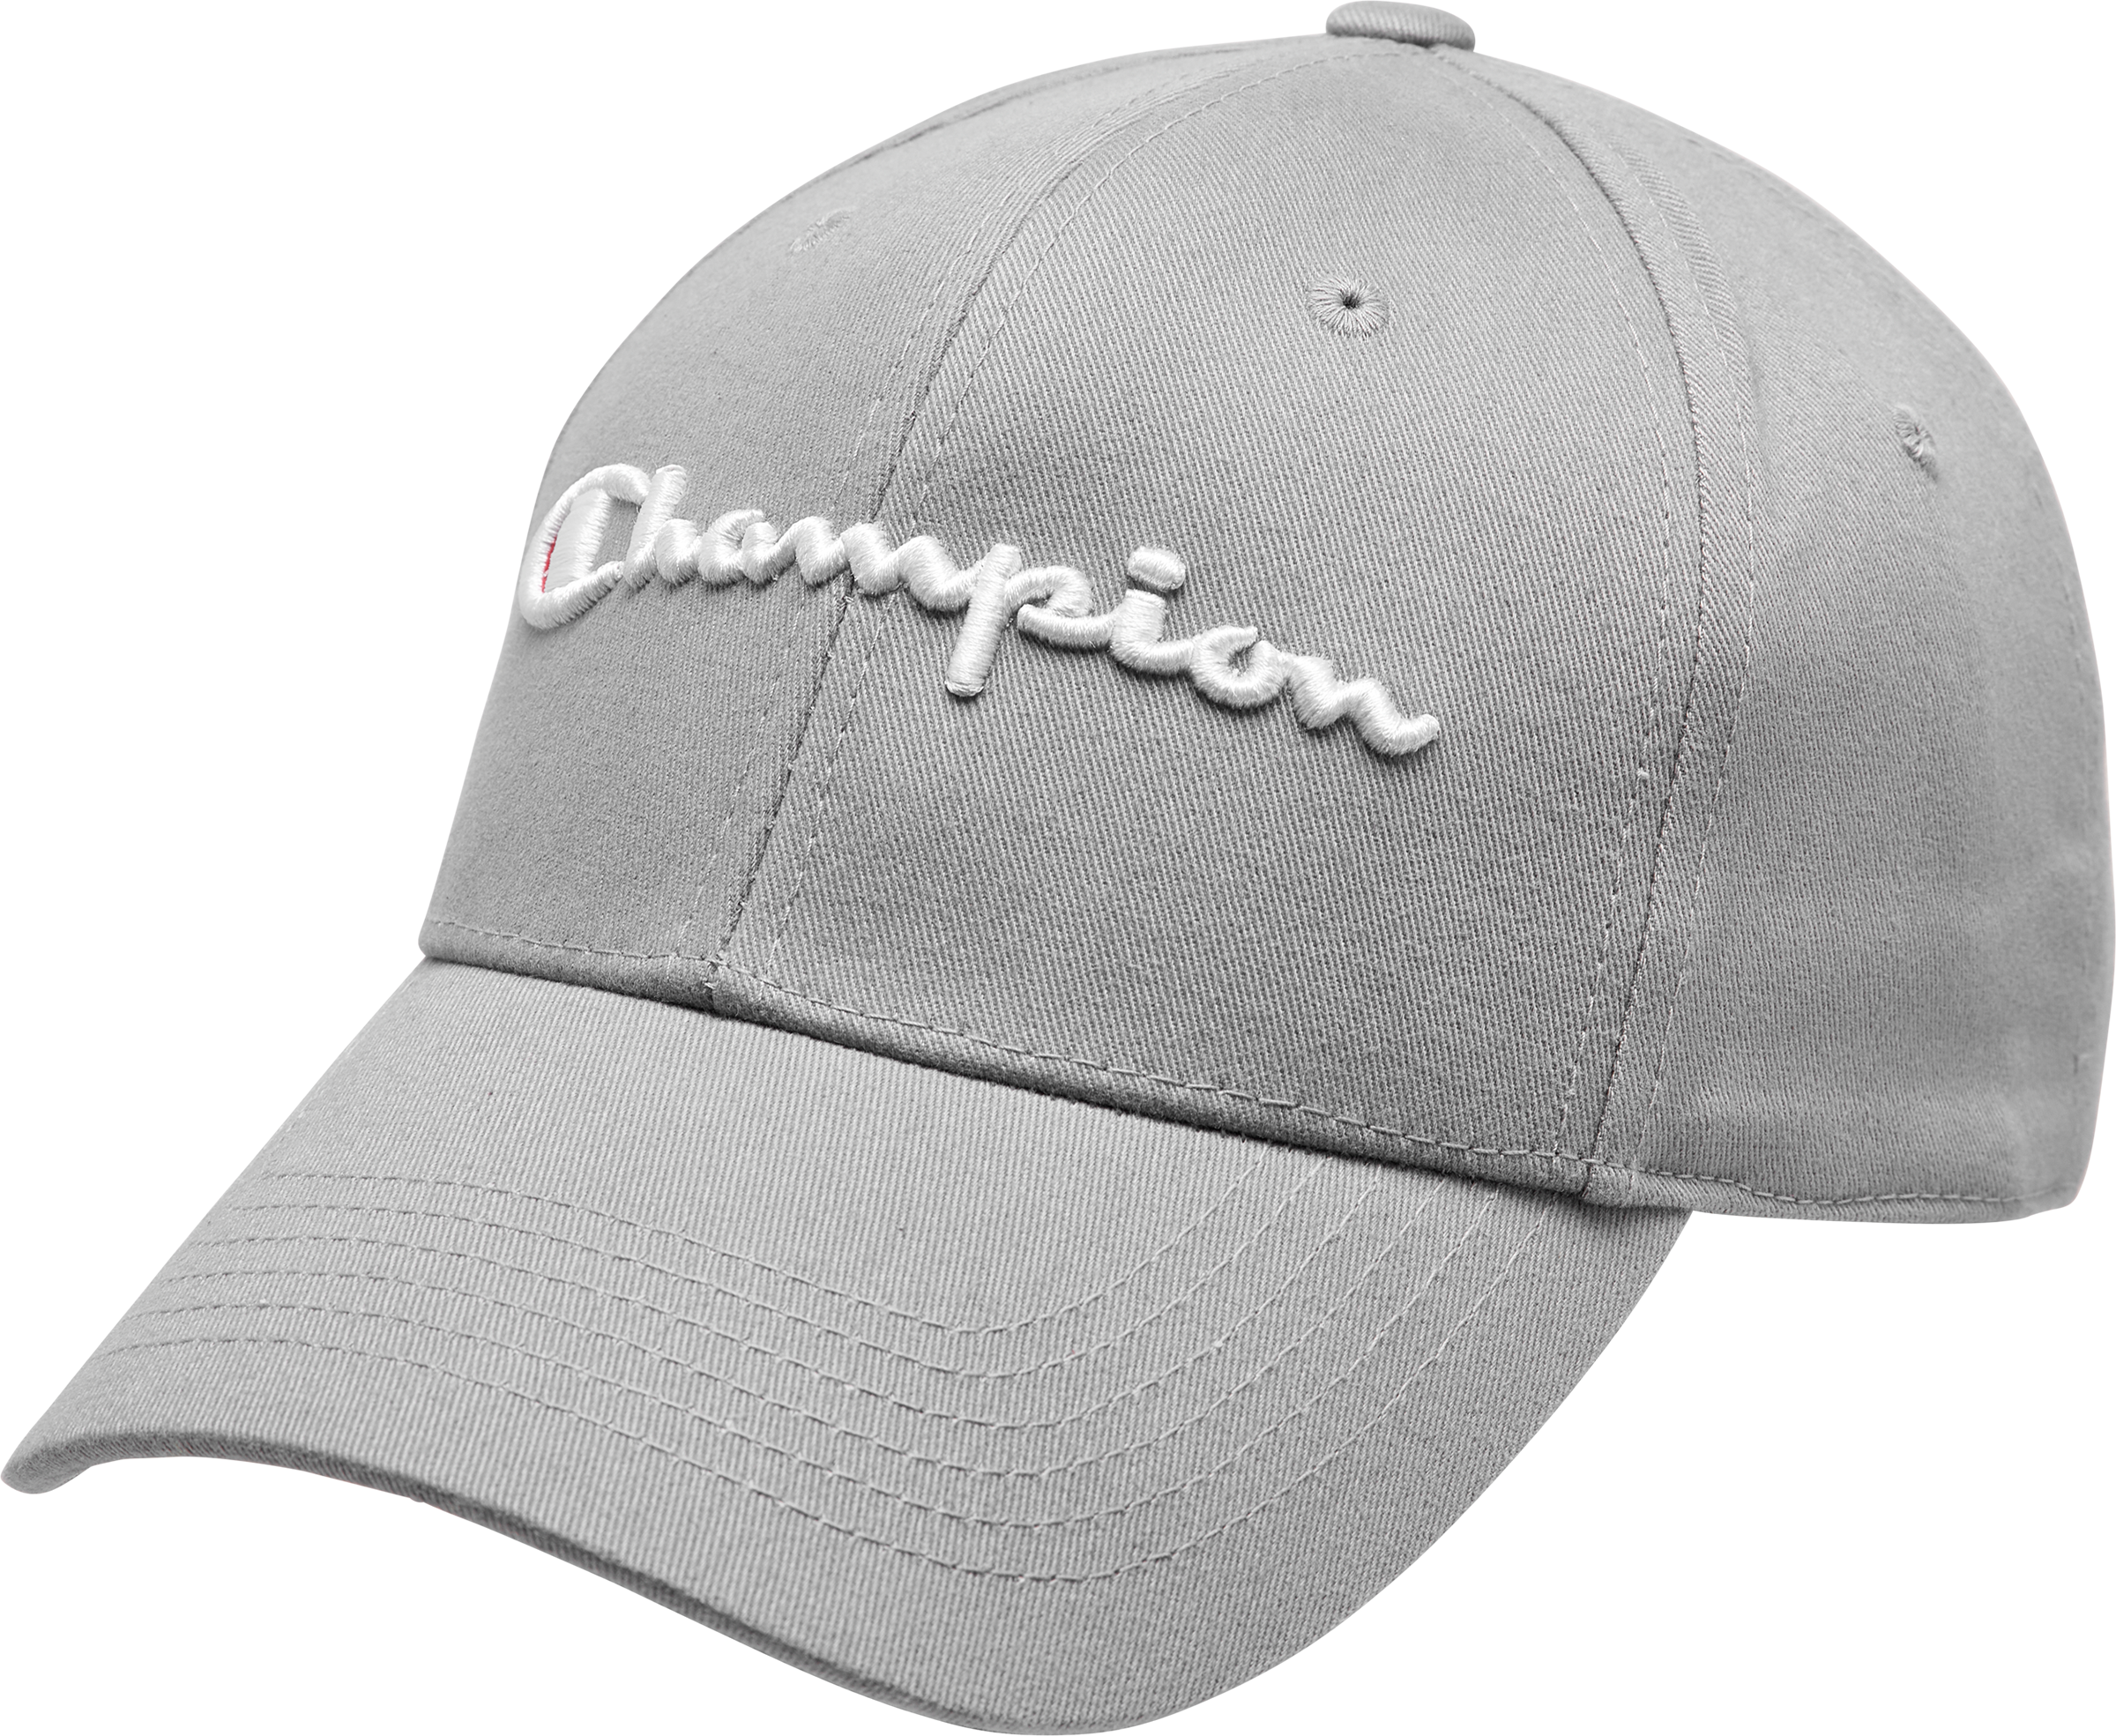 gray champion hat